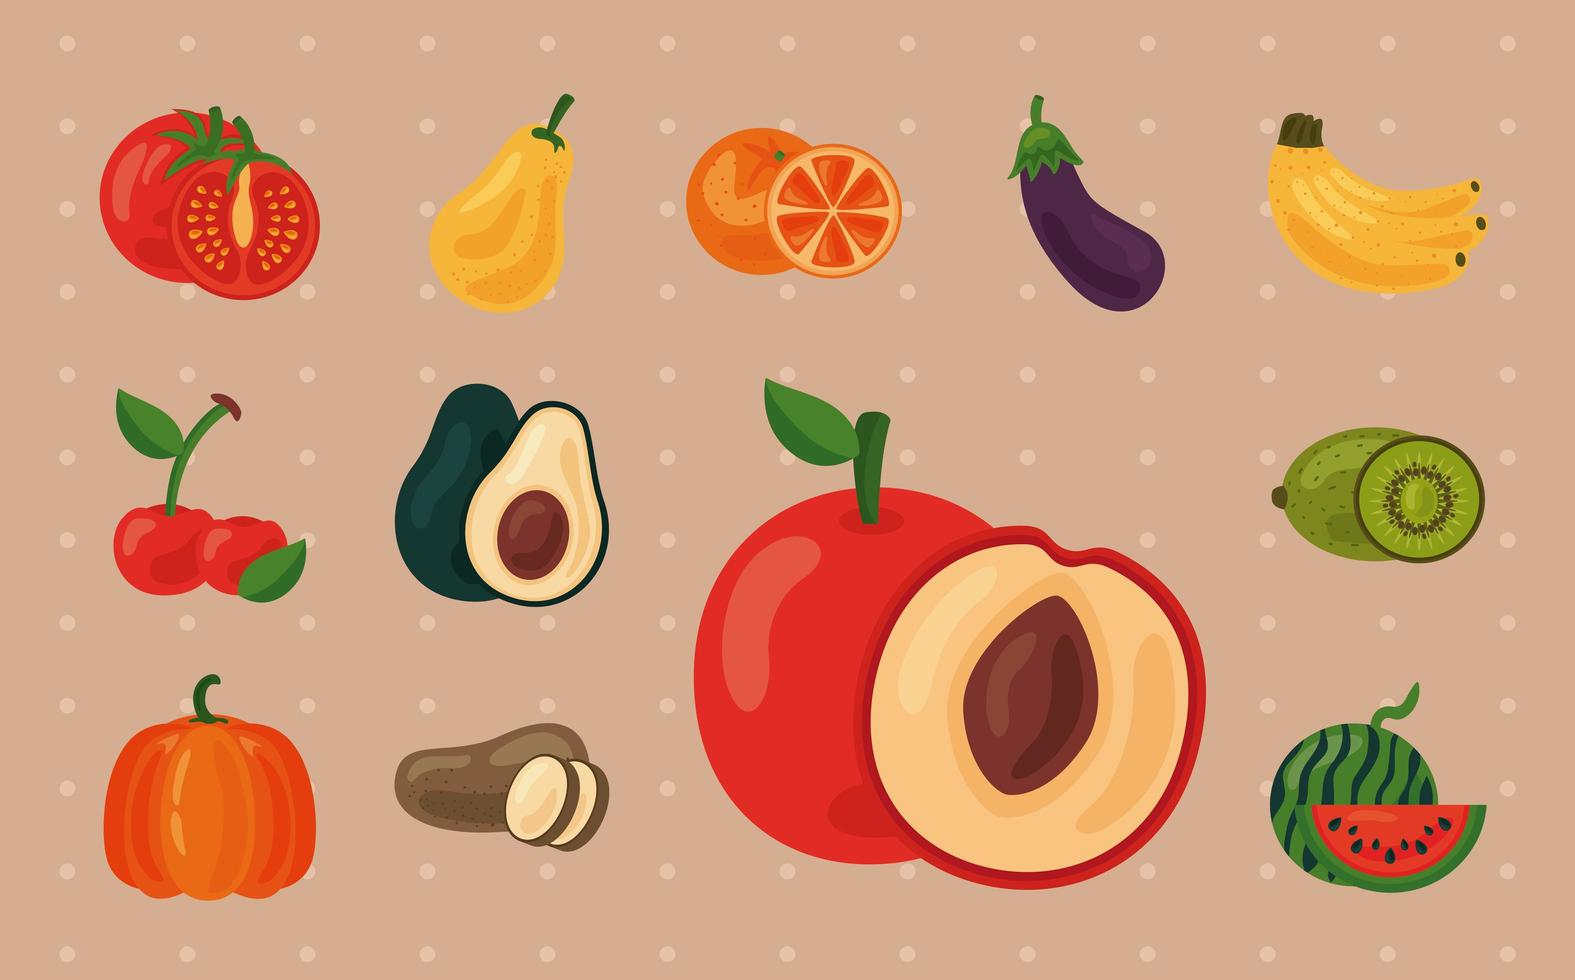 bundel van twaalf verse groenten en fruit, pictogrammen voor gezonde voeding vector